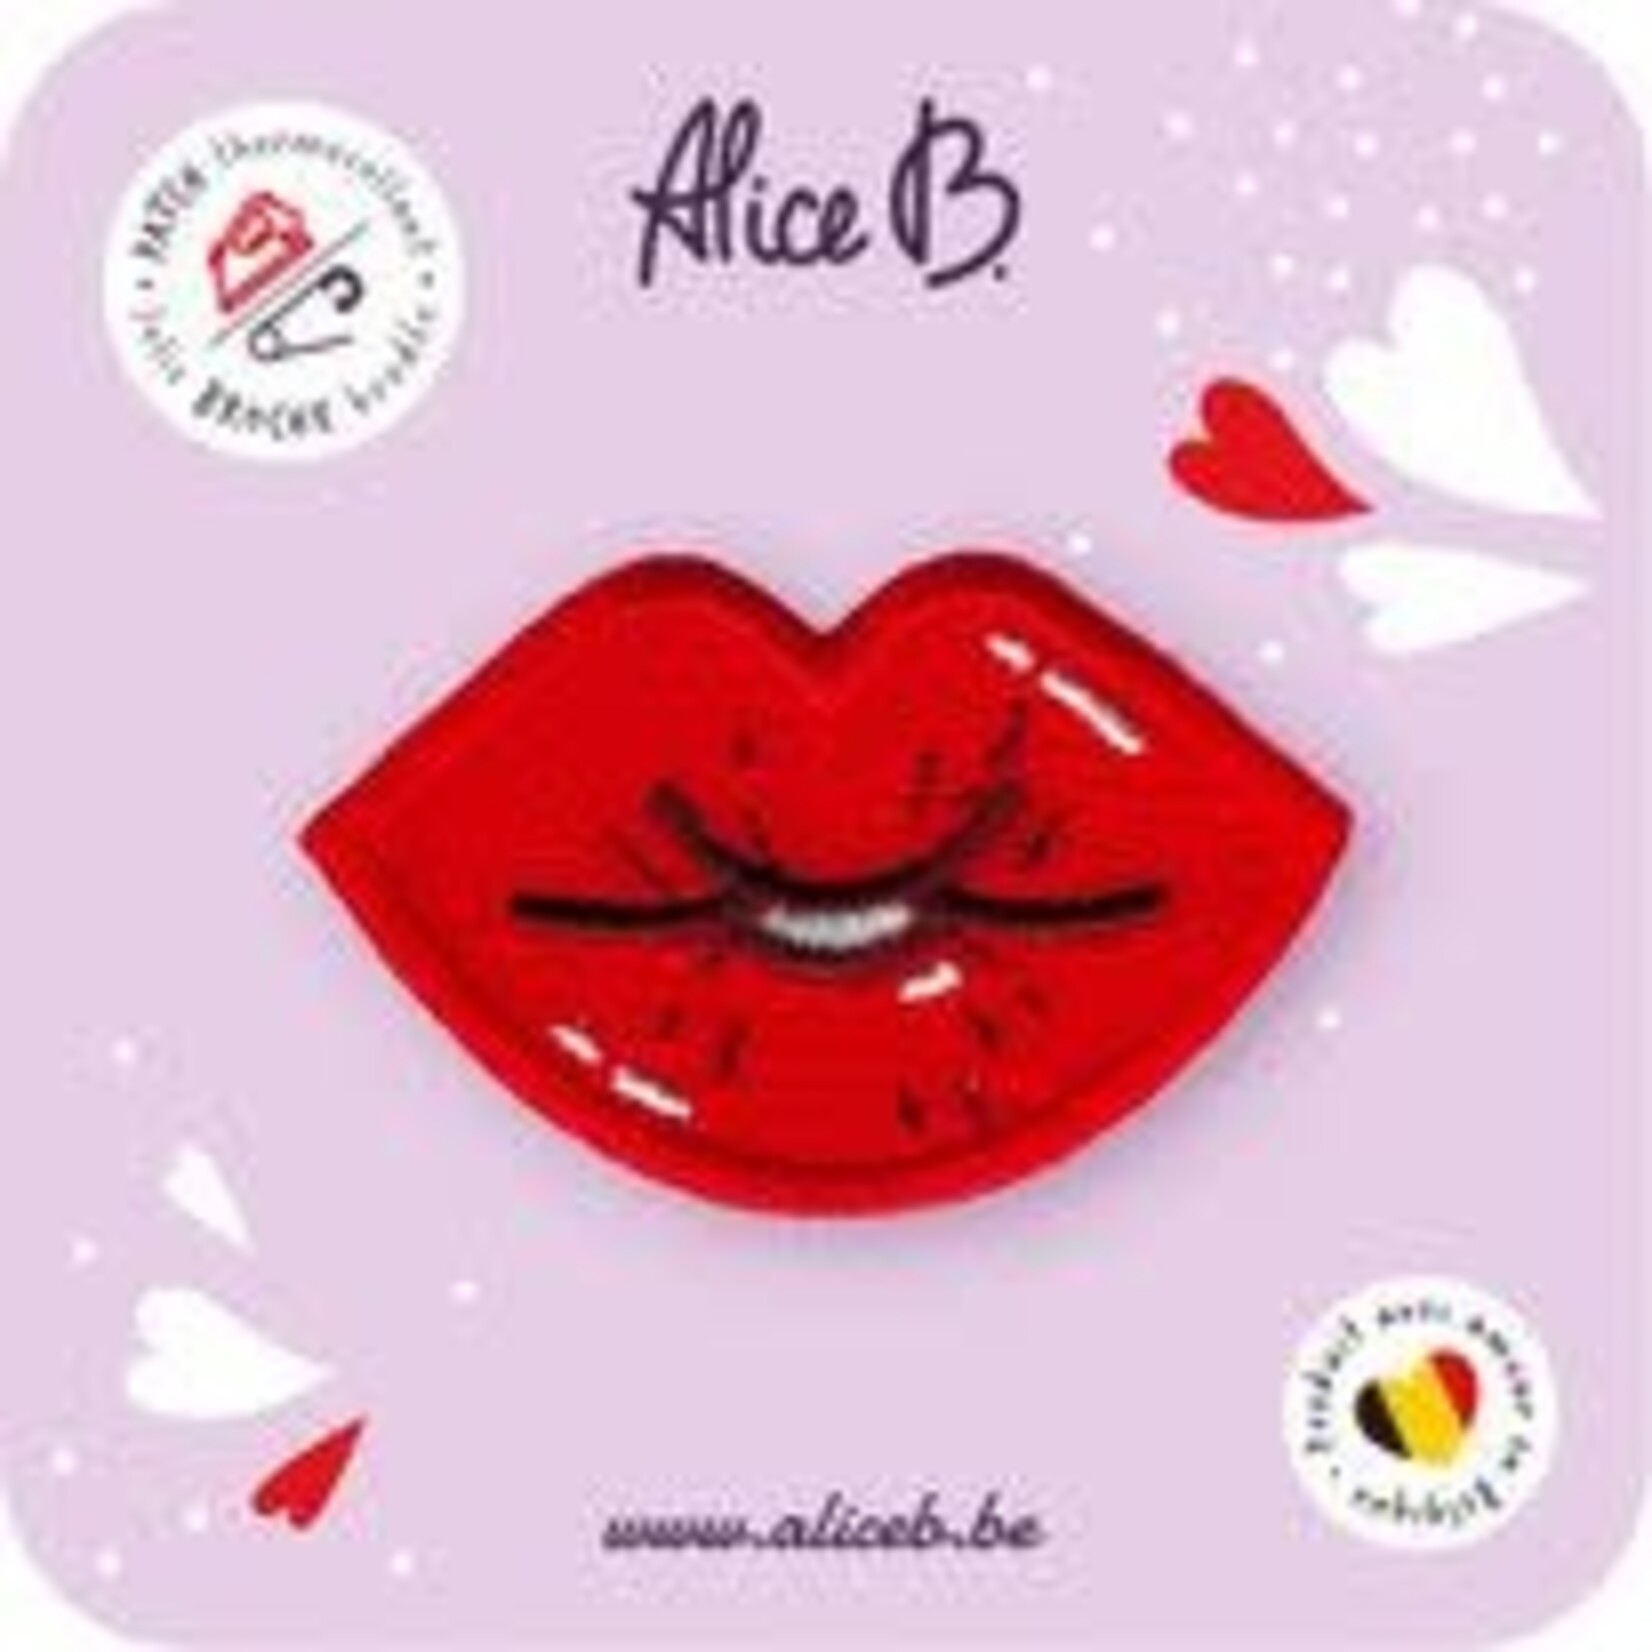 ALICE B. ALICE B - Full of love